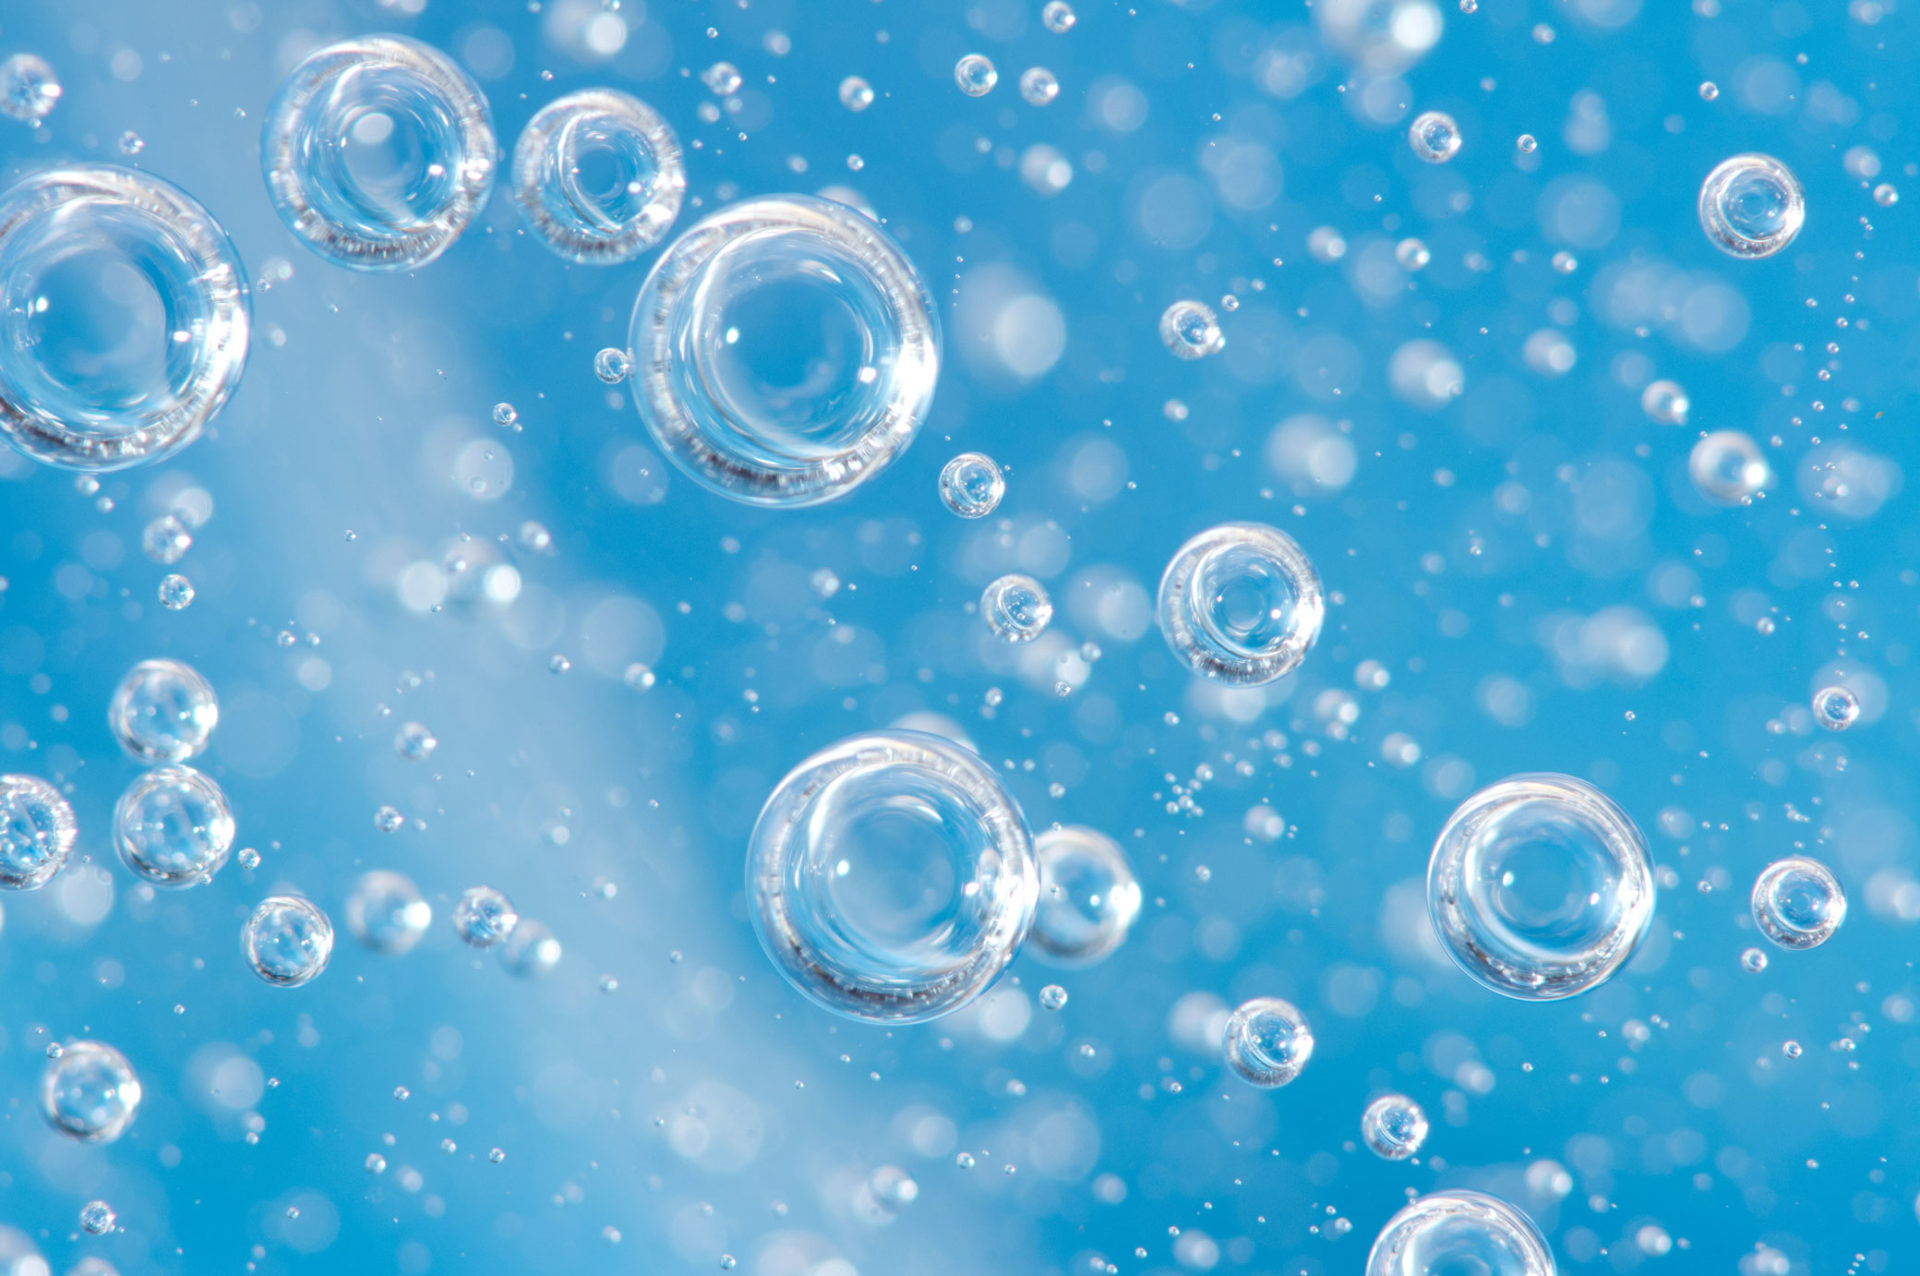 Воздухом водой кислородом и другим. Пузырьки в воде. Мыльные пузыри на воде. Голубая вода с пузырьками. Пузыри воздуха.